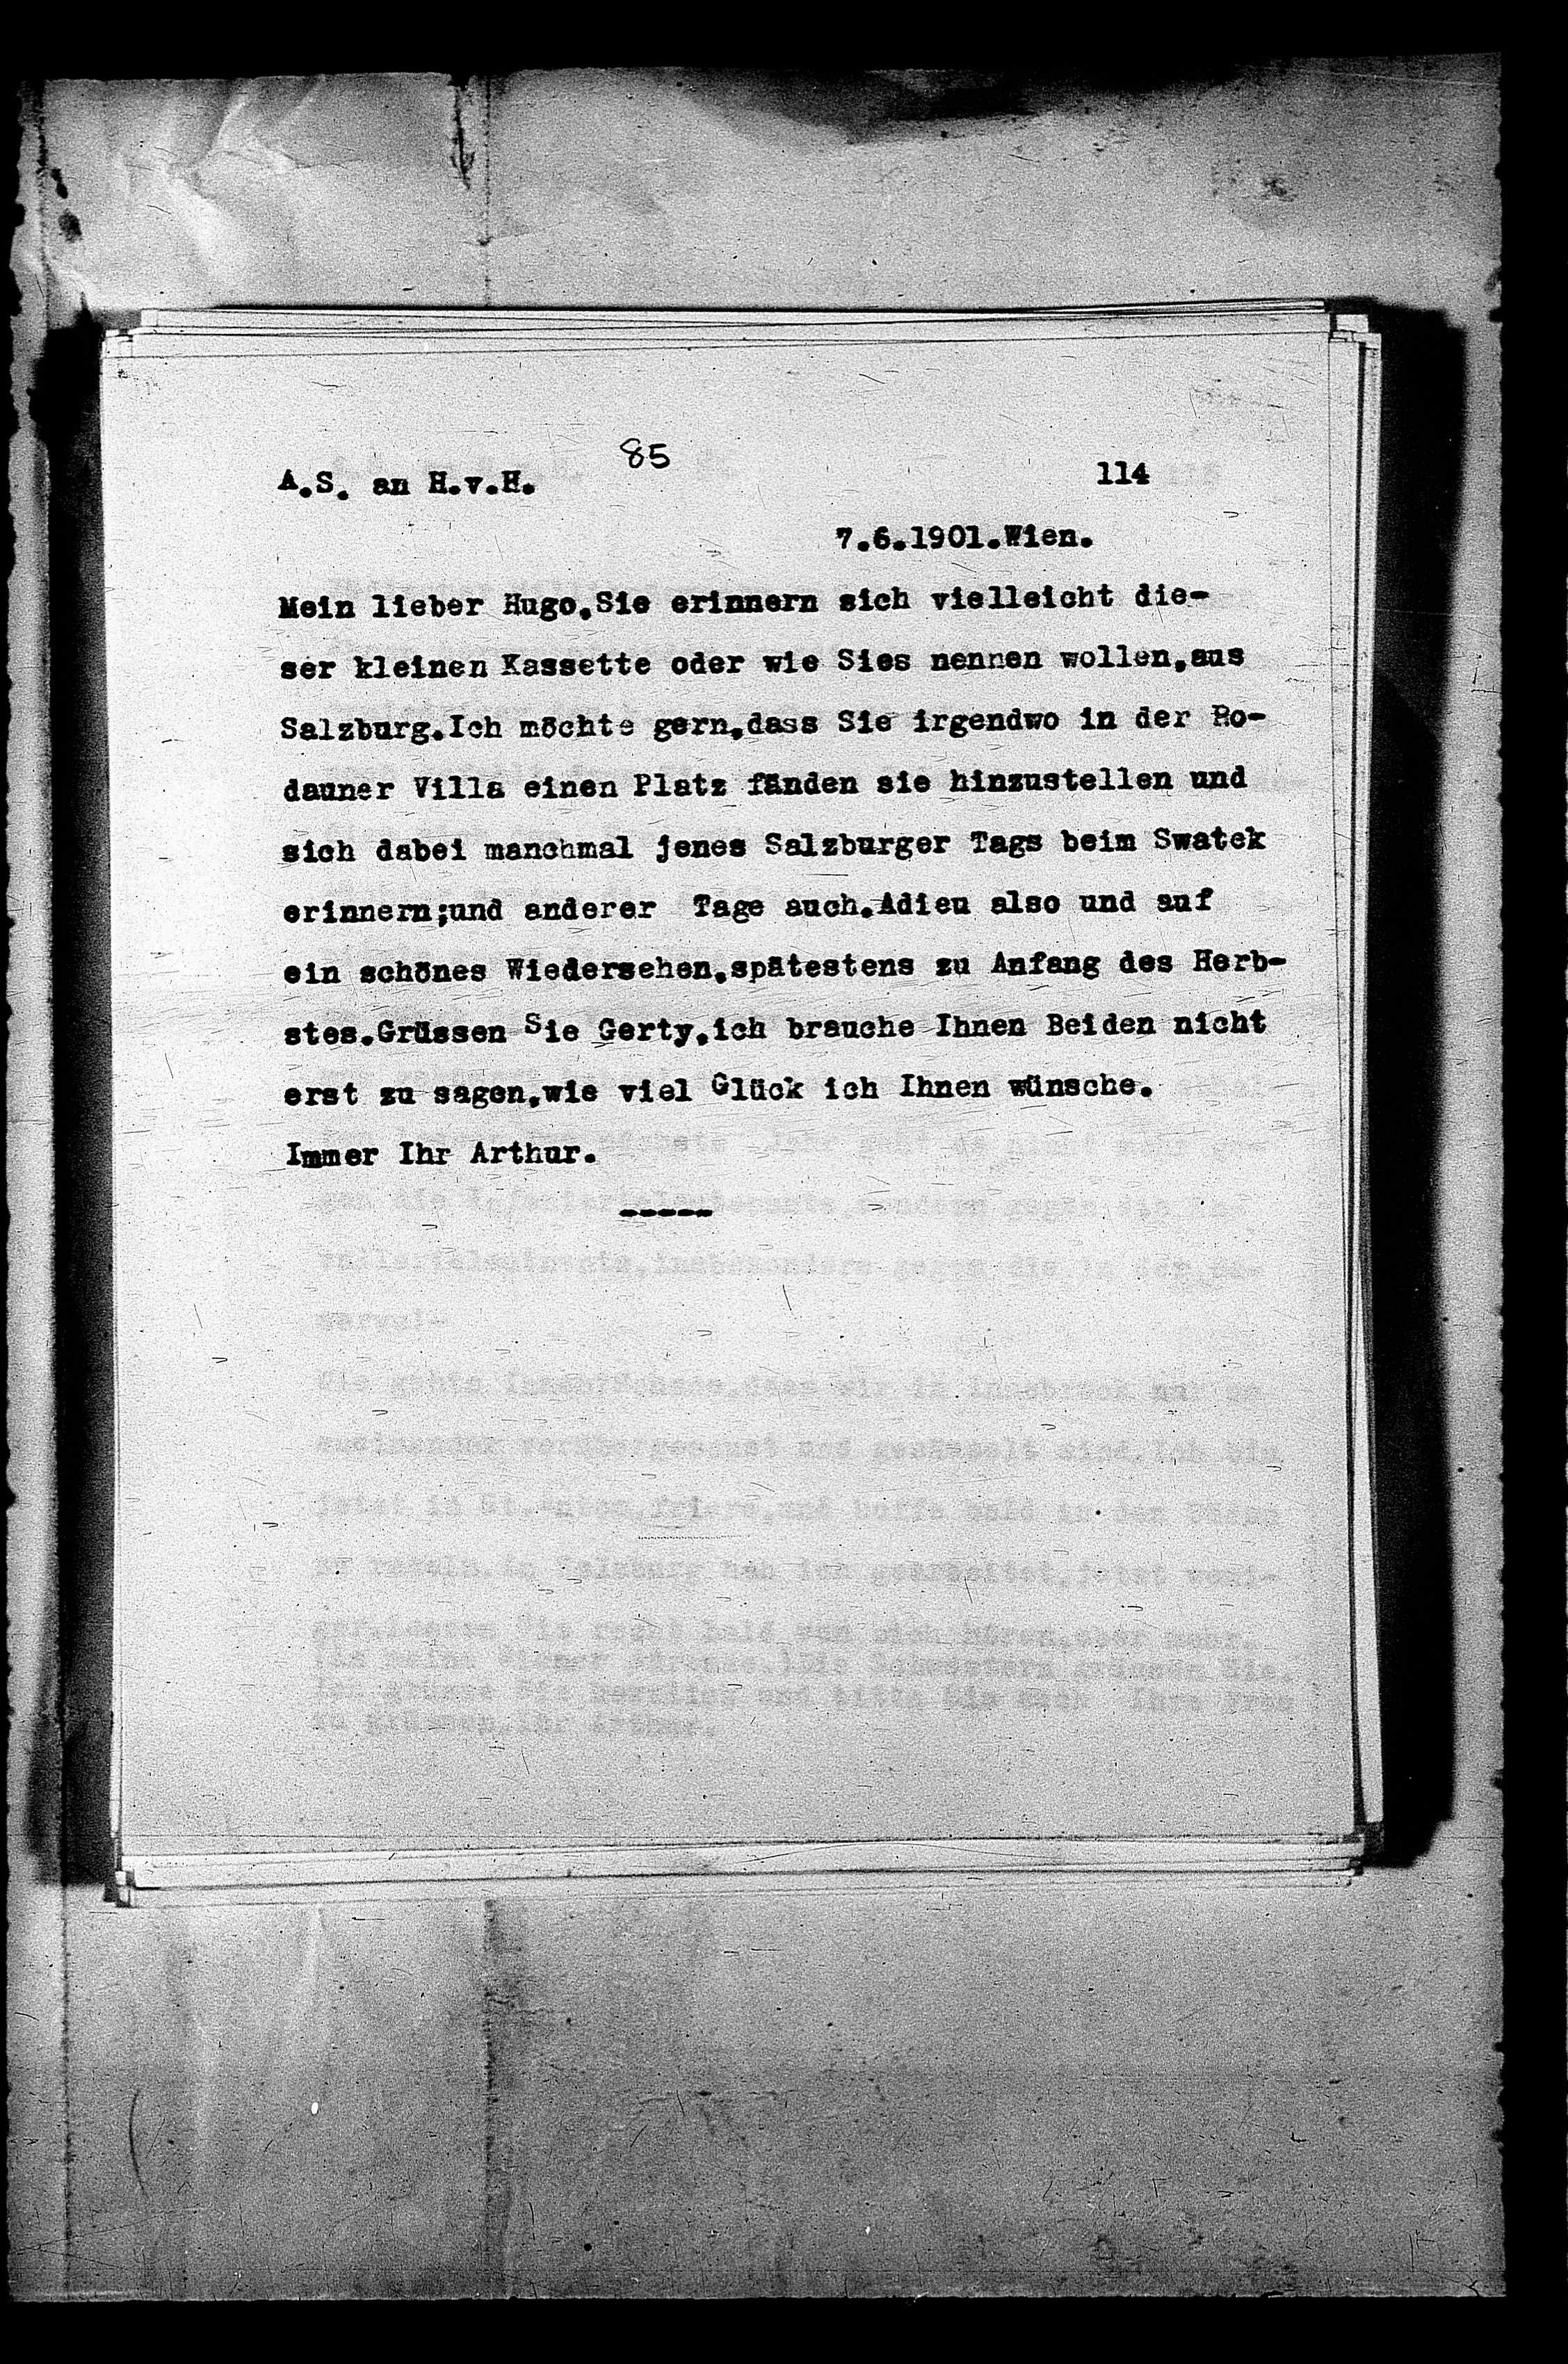 Vorschaubild für Hofmannsthal, Hugo von_AS an HvH Abschrift, HvH an AS, Originale (Mikrofilm 38), Seite 118